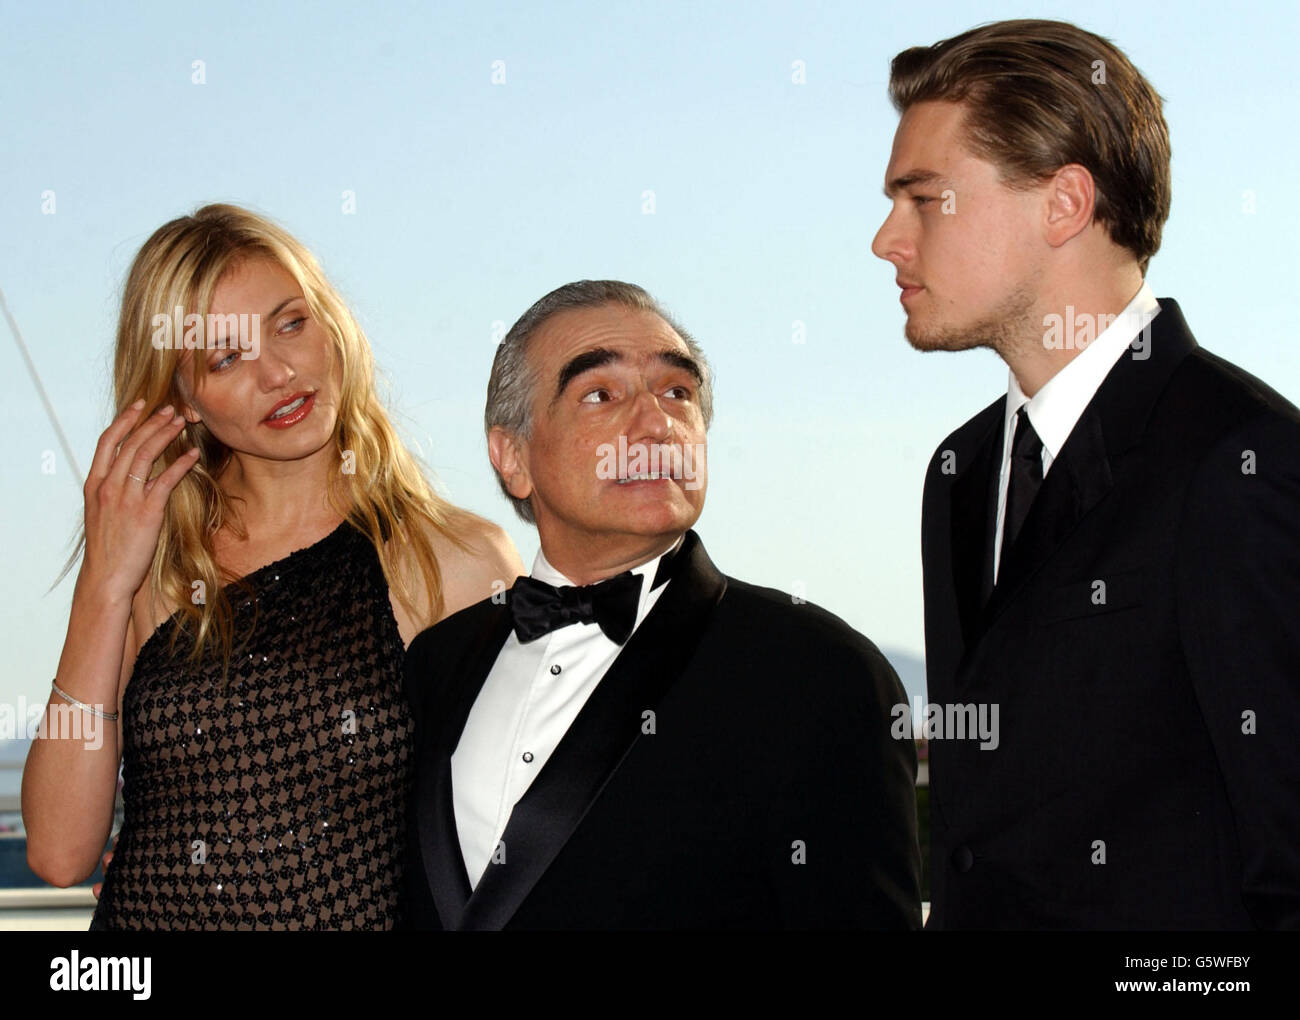 Regisseur Martin Scorsese flankiert von Cameron Diaz und Leonardo DiCaprio während einer Fotoschau, um Scorseses neuesten Film "Gangs of New York" während des 55. Filmfestivals in Cannes zu promoten. Stockfoto